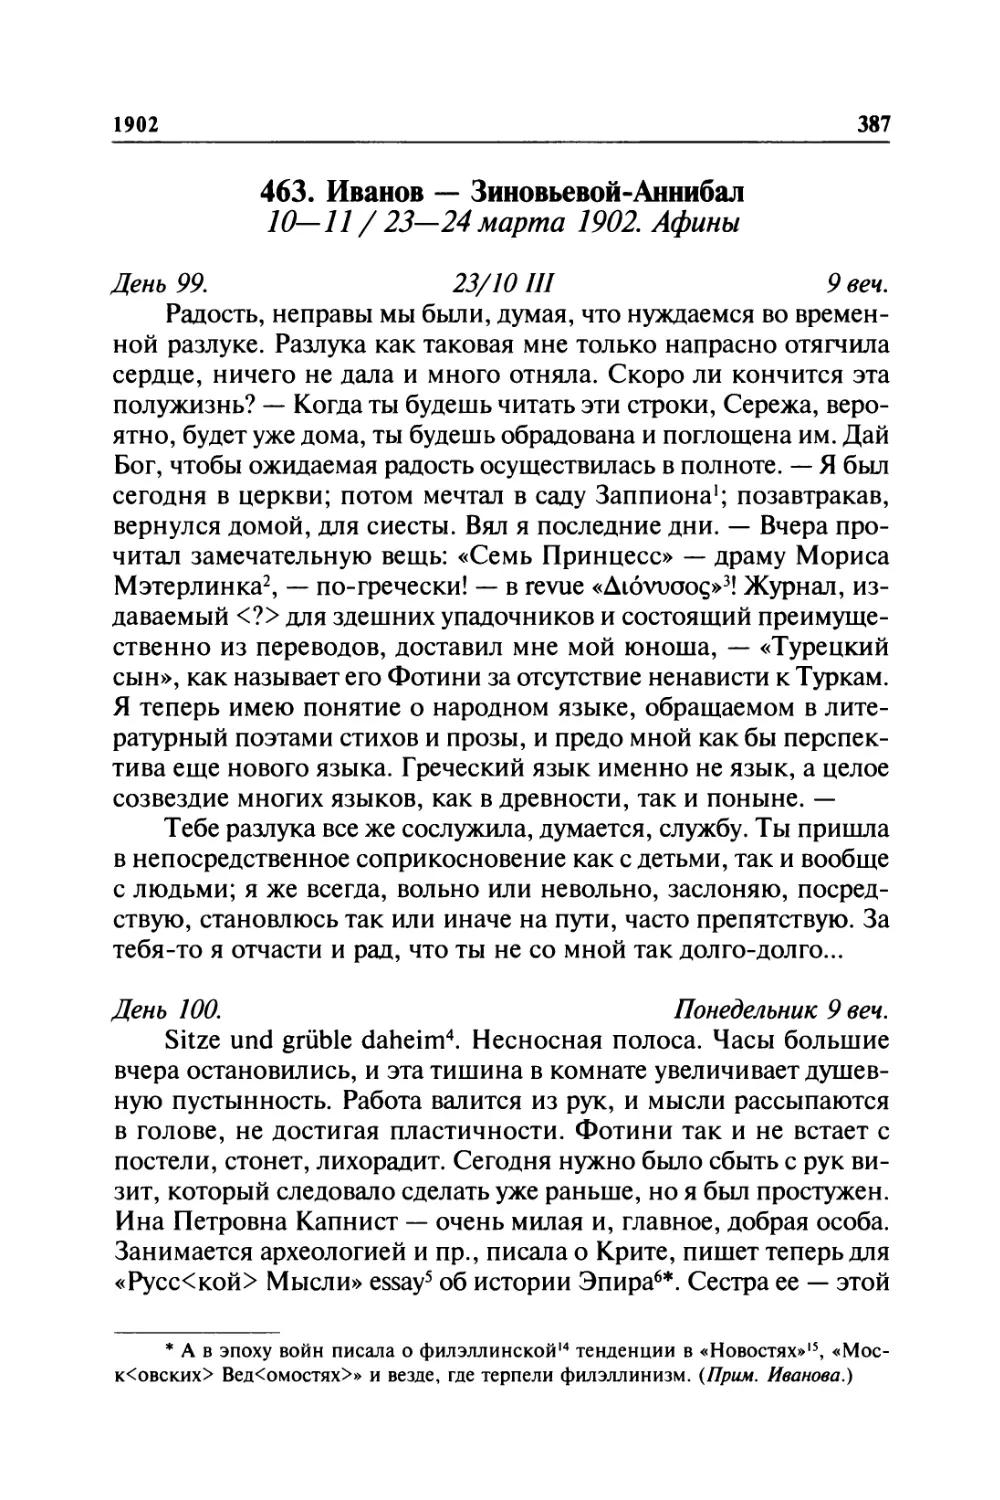 463. Иванов — Зиновьевой-Аннибал. 10—11 /23—24марта 1902. Афины